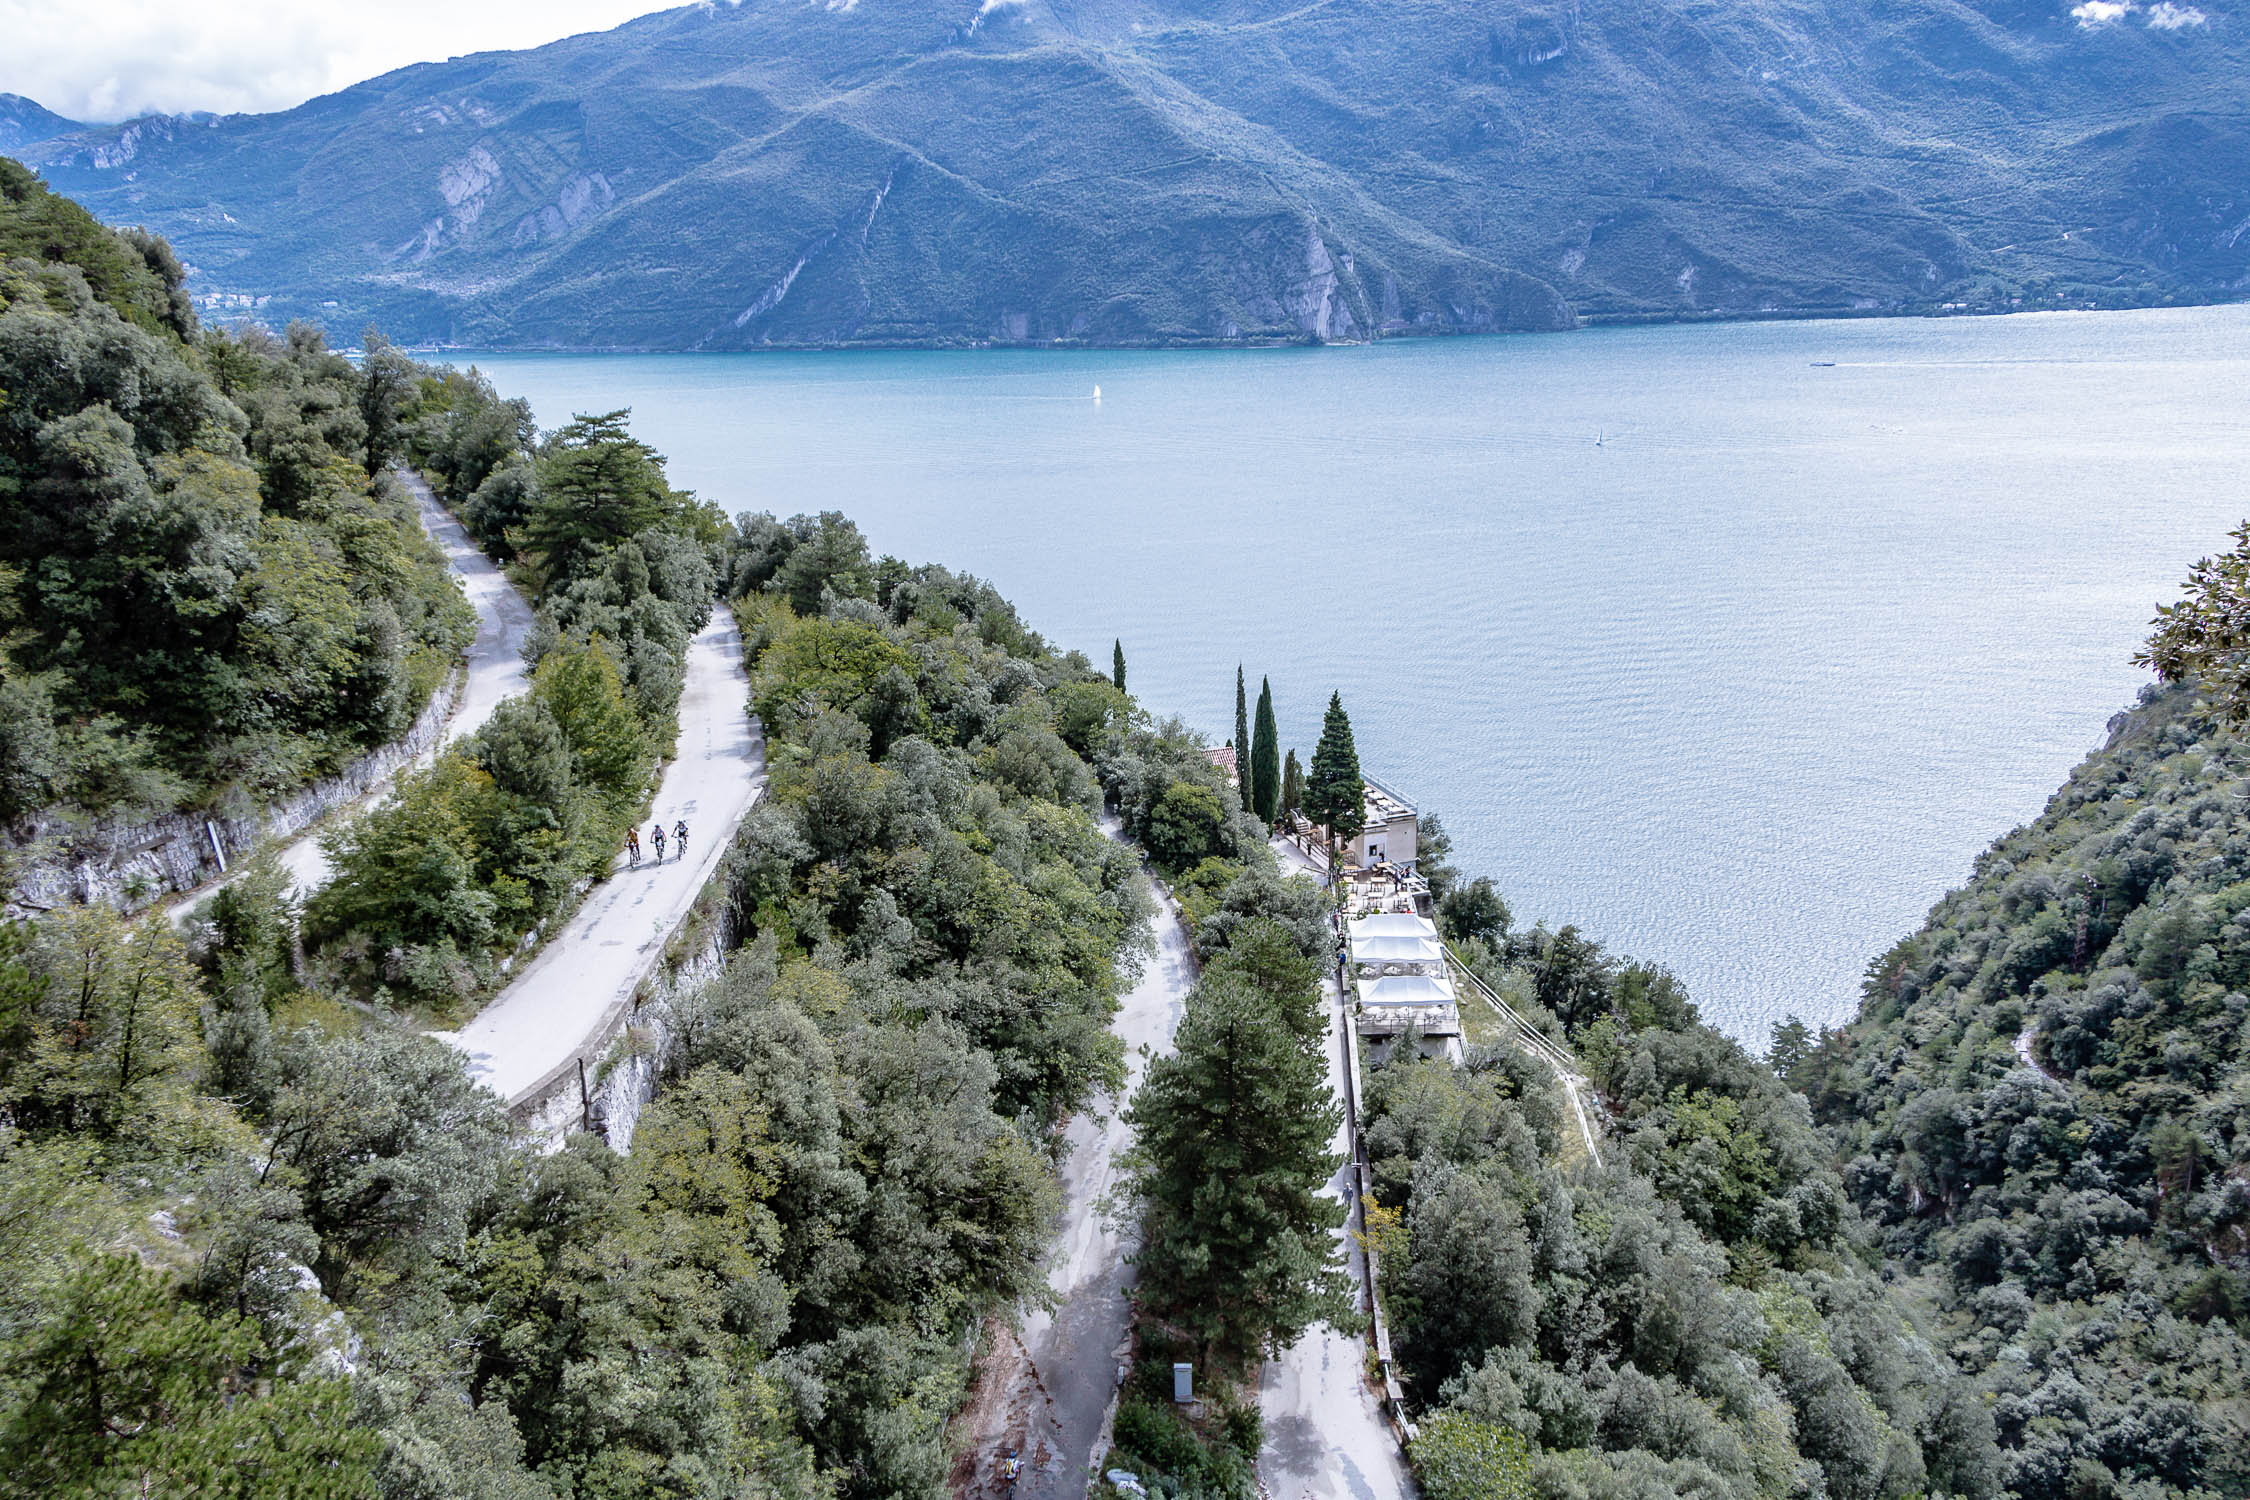 Riva del Garda am Gardasee ideal zum Wandern und Radfahren, Trentino, Italien, Pregasina, Lendrotal, Monte Brione, Bastion, Ponale-Strasse, MAG-Museo,